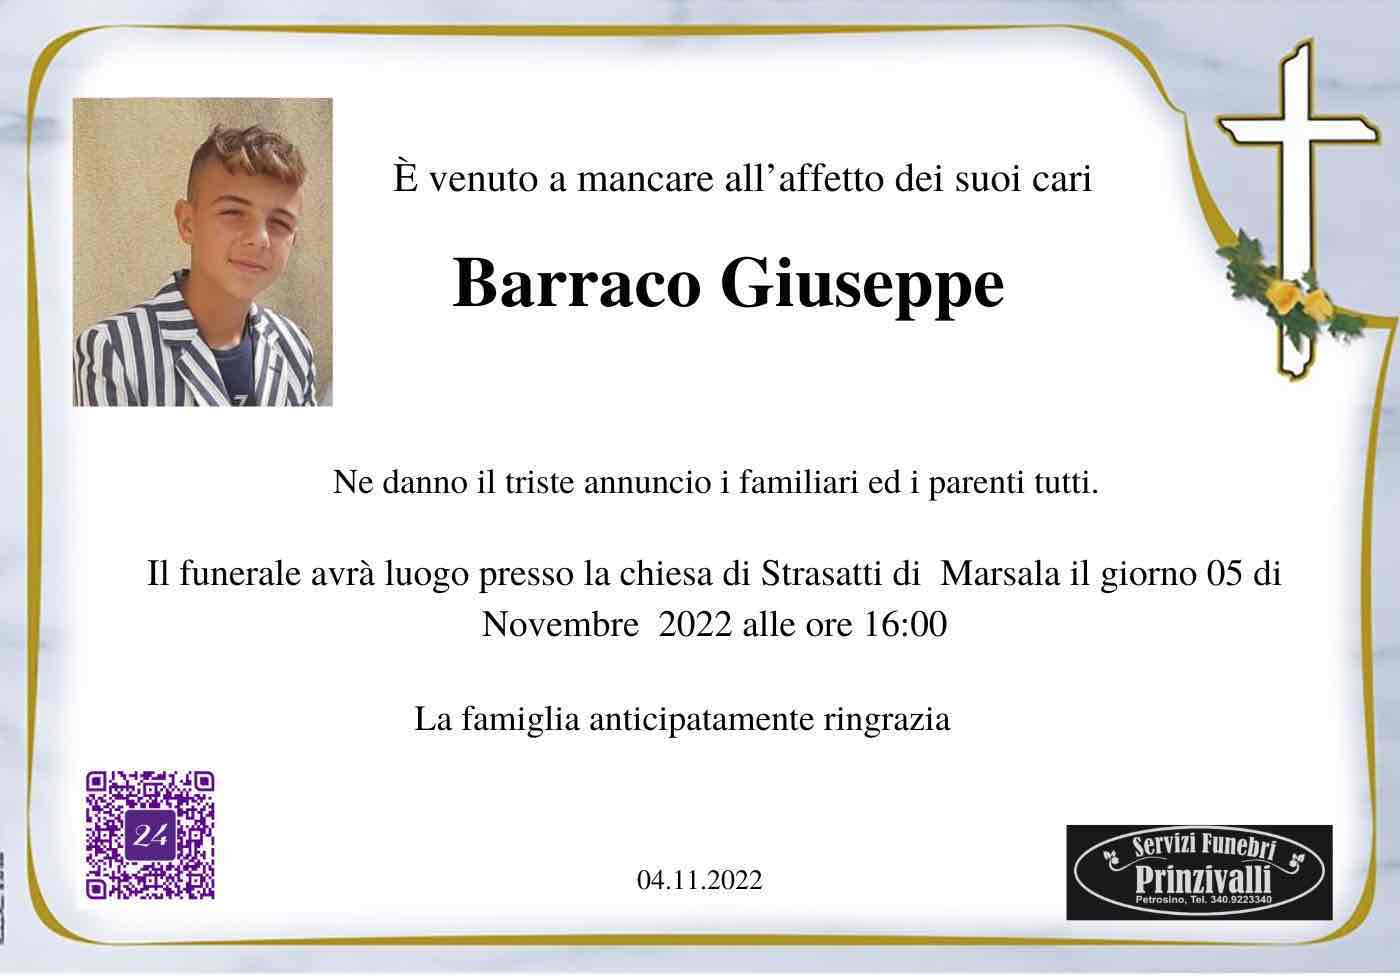 Giuseppe Barraco